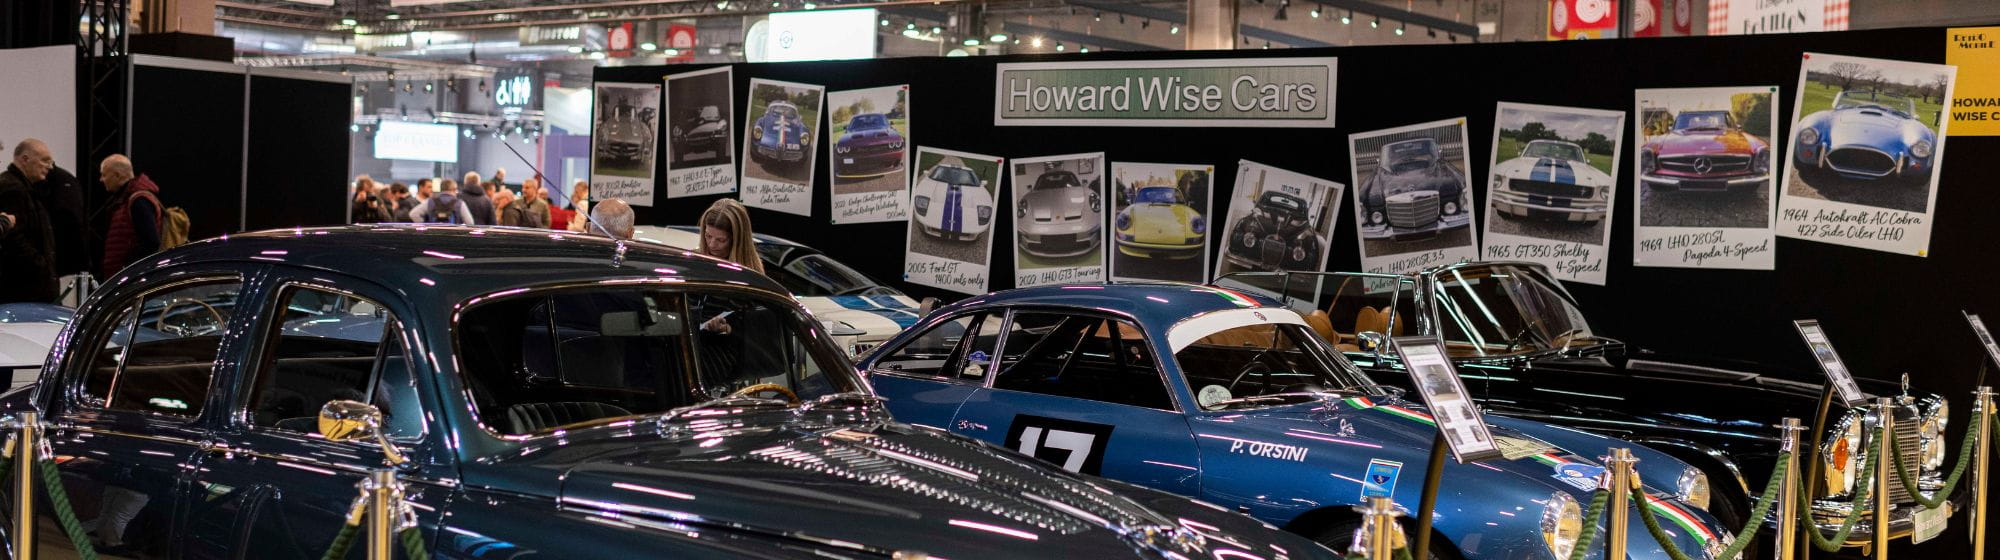 Voitures de collections Howard Wise Cars en teintes de bleu dans le salon Rétromobile